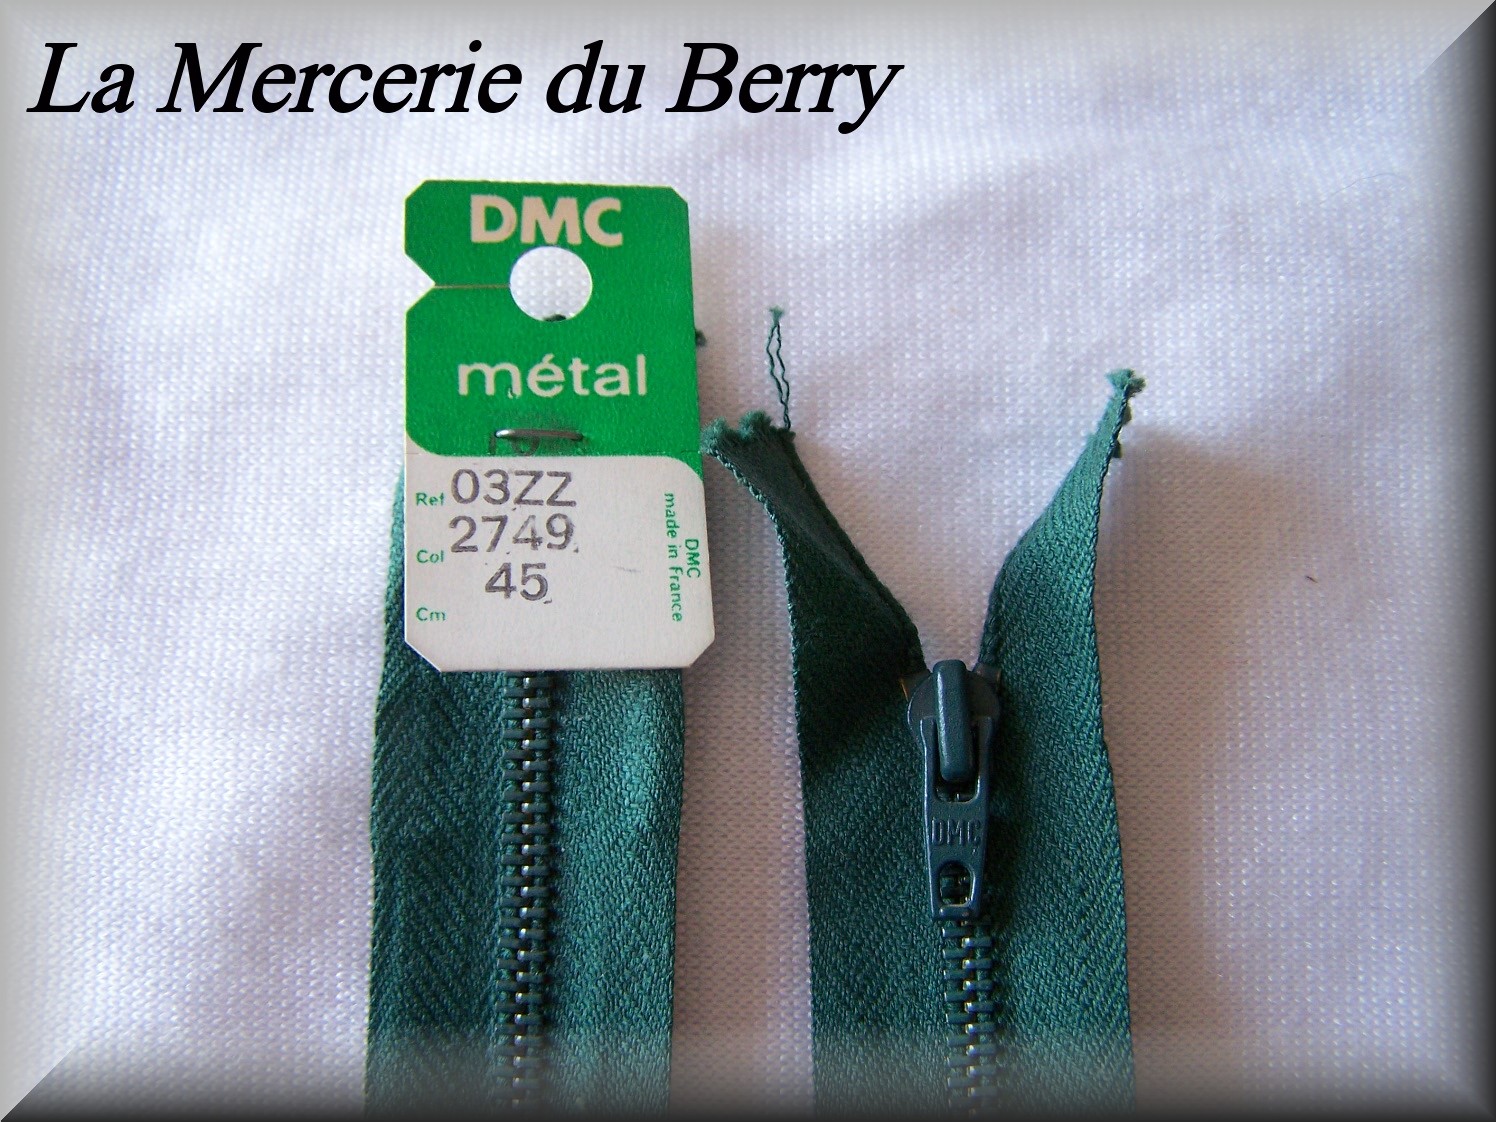 DMC-O3ZZ-2749